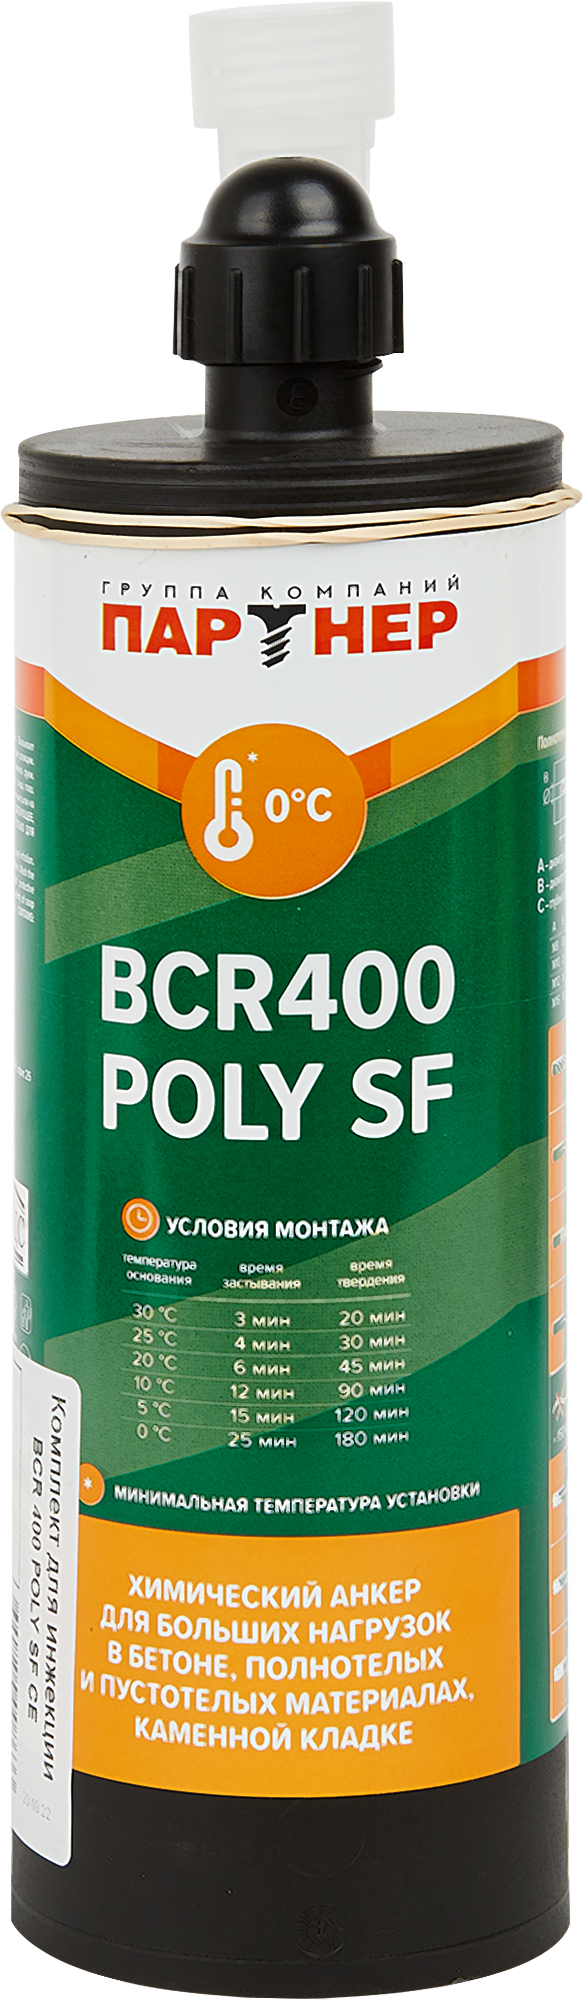 82642905 Анкер химический Poly SF CE 400 BCR универсальный STLM-0032766 ПАРТНЕР